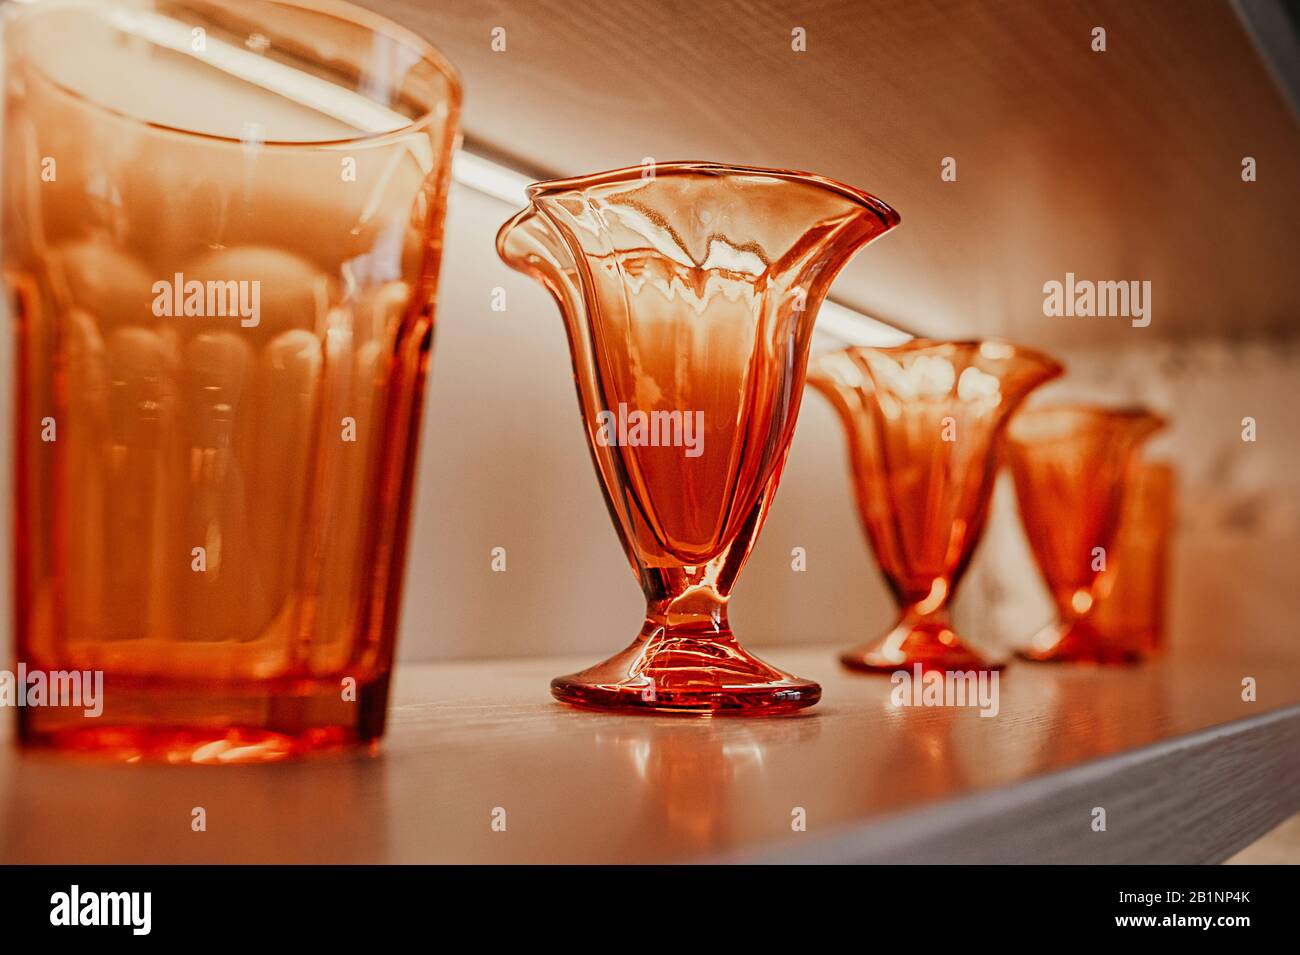 https://c8.alamy.com/compes/2b1np4k/en-los-estantes-de-madera-del-interior-de-la-habitacion-hay-vasos-con-textura-y-vasos-de-cristal-naranja-brillante-identicos-y-elegantes-para-bebidas-2b1np4k.jpg